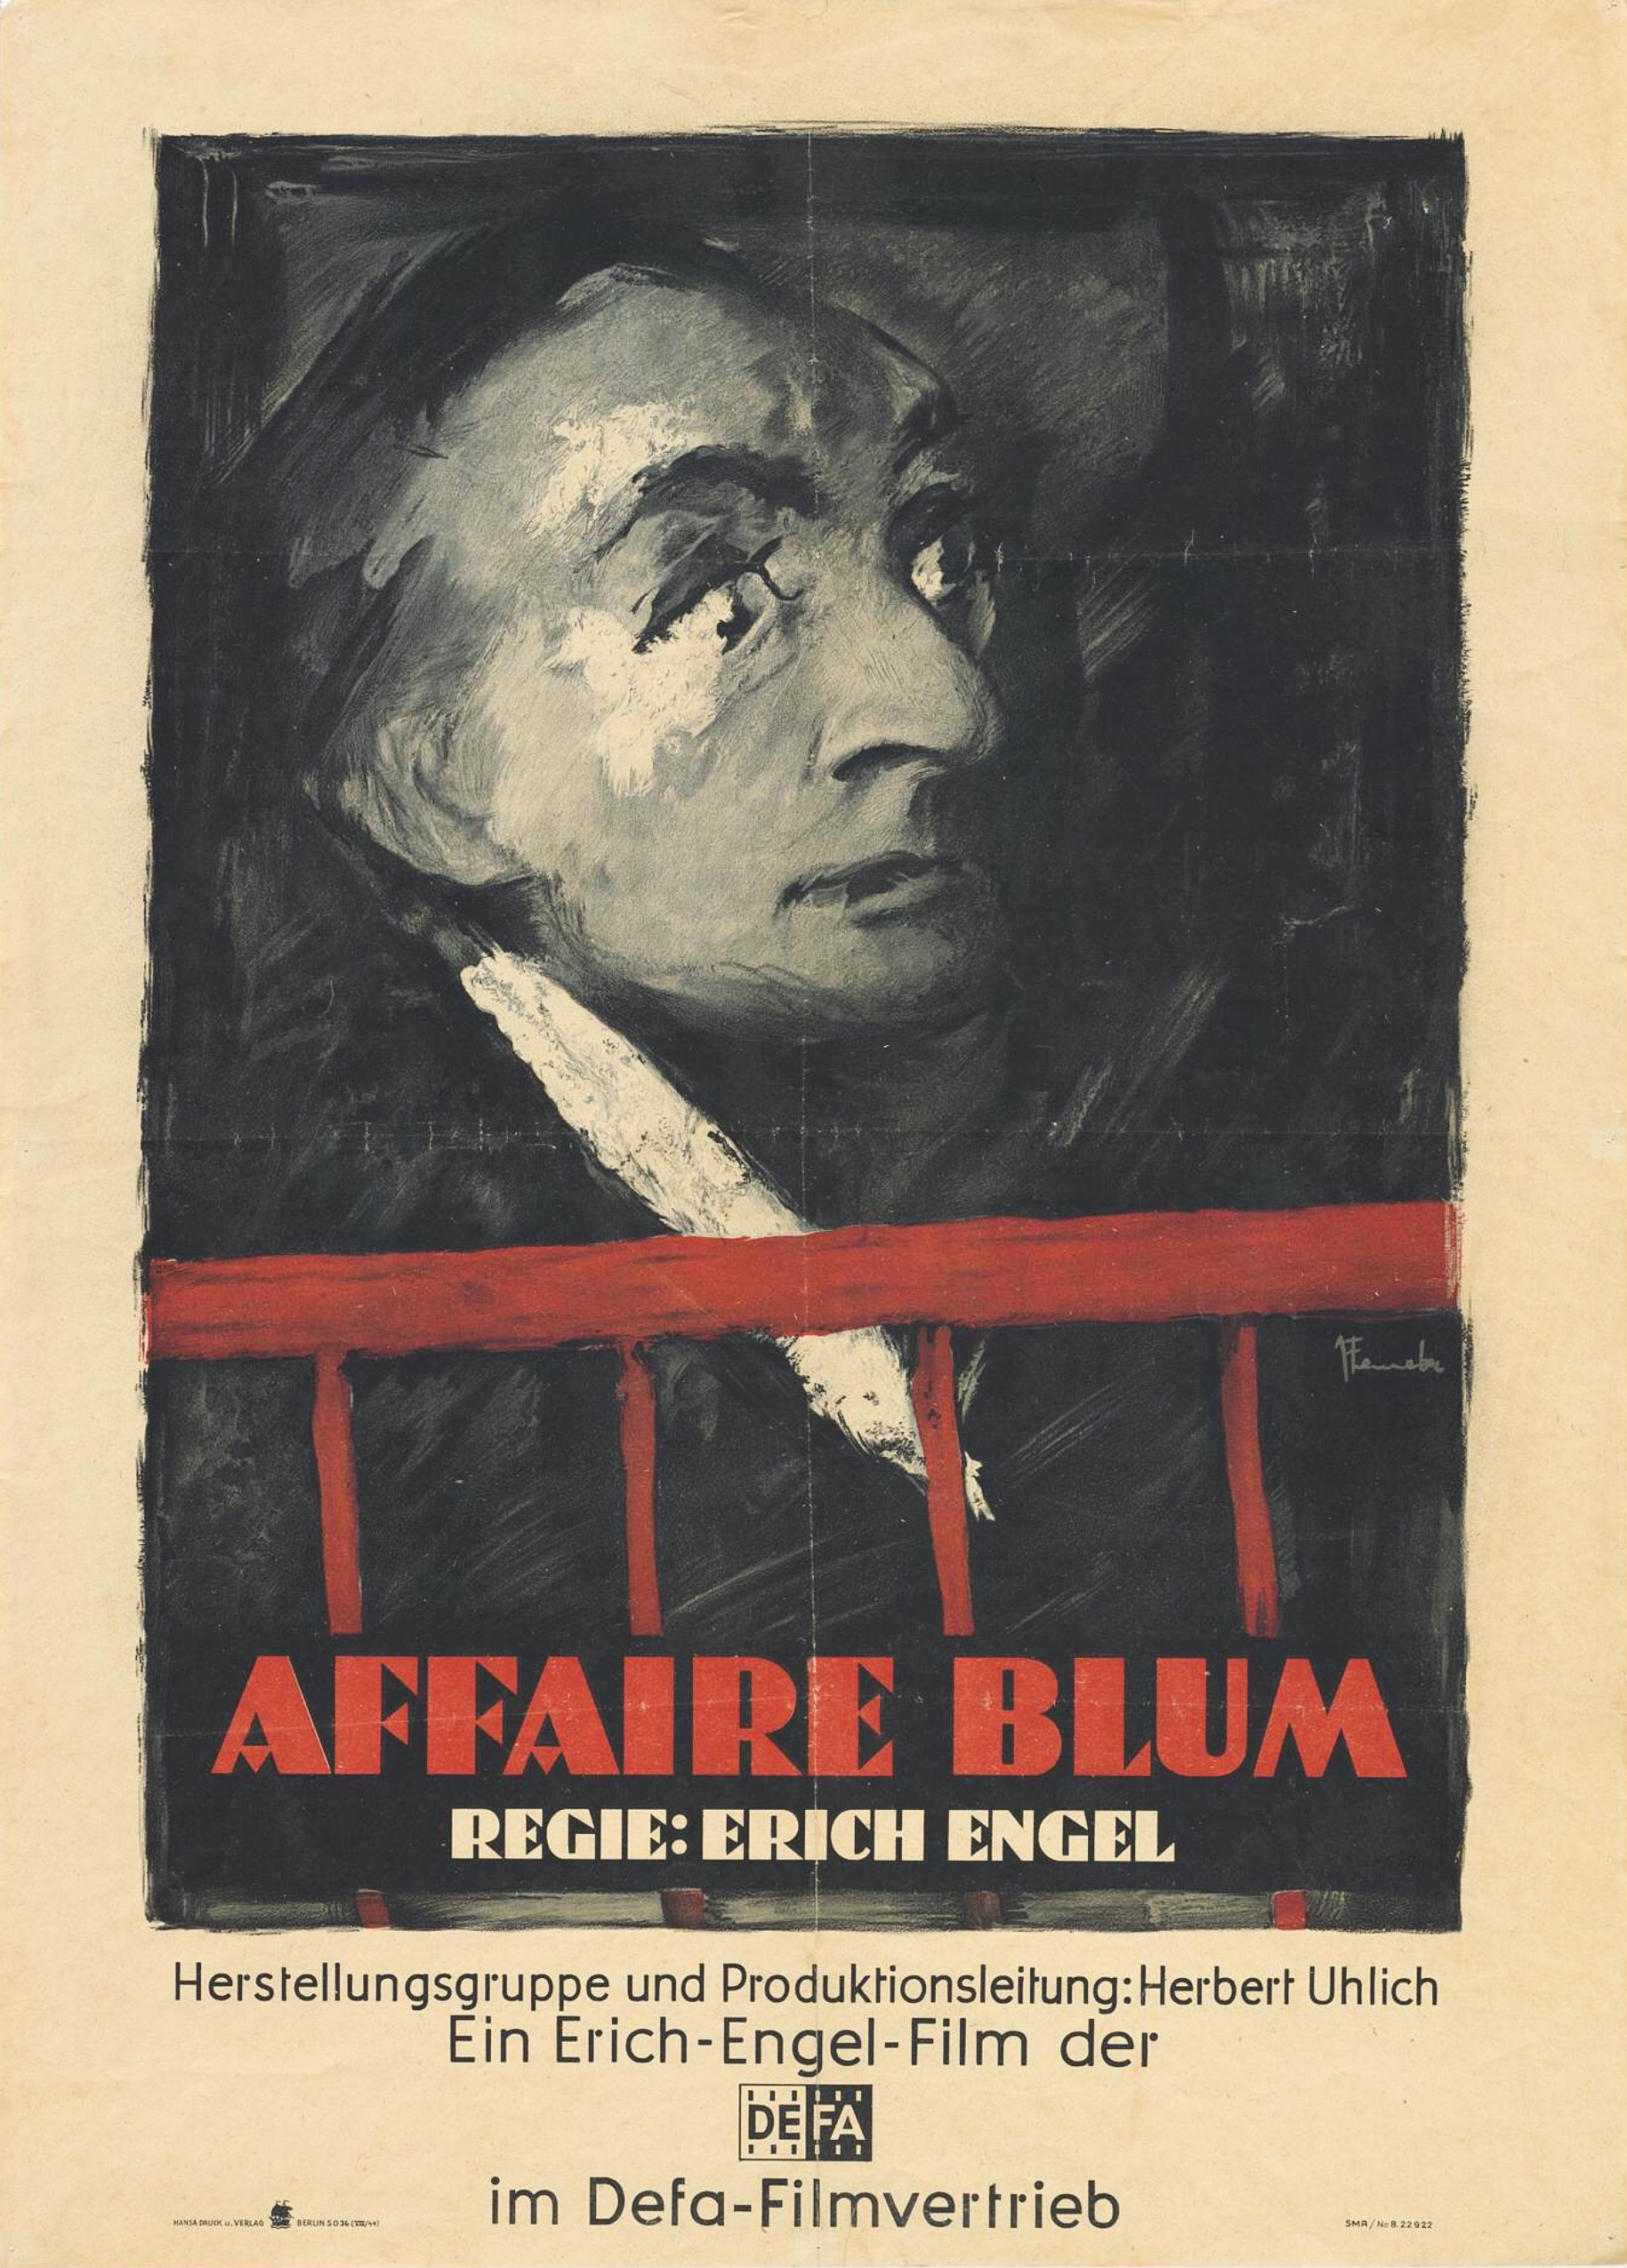 The Affair Blum (1948) Screenshot 4 